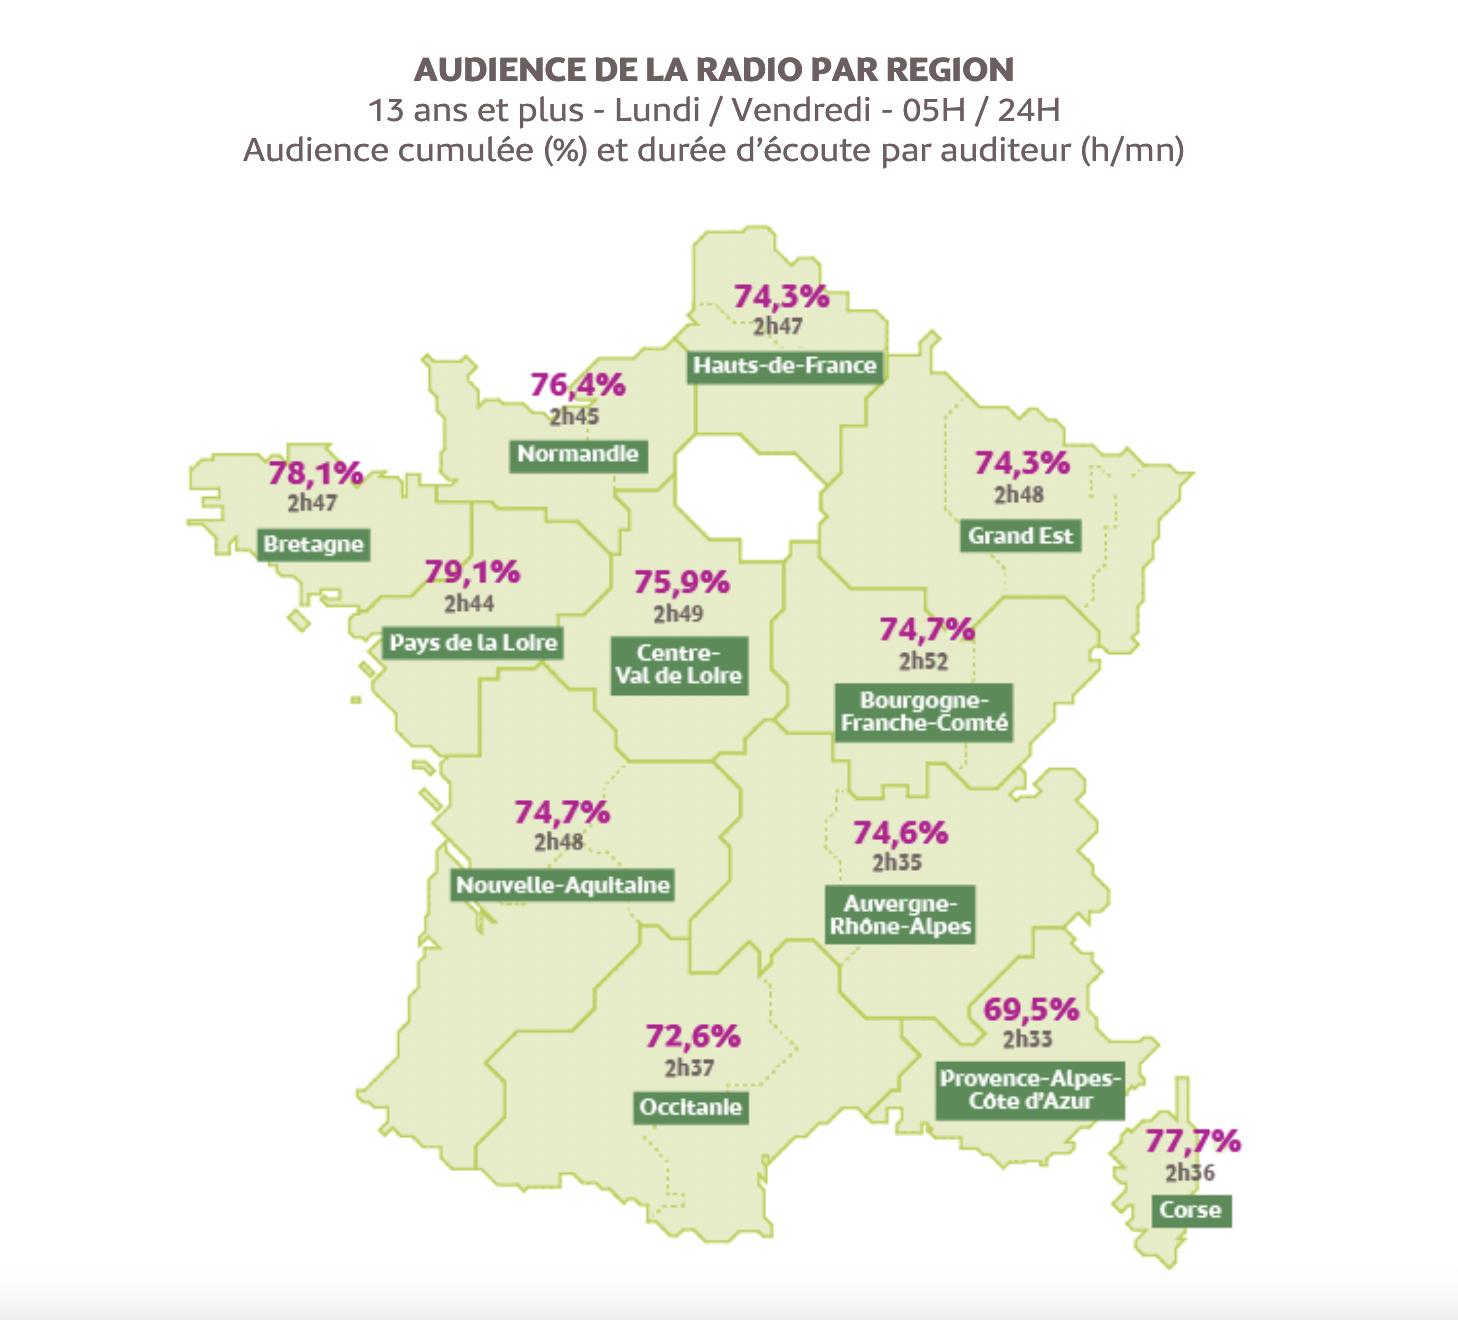 Source : Médiamétrie – EAR > Local – Vague 2020 - 2022 - Copyright Médiamétrie - Tous droits réservés